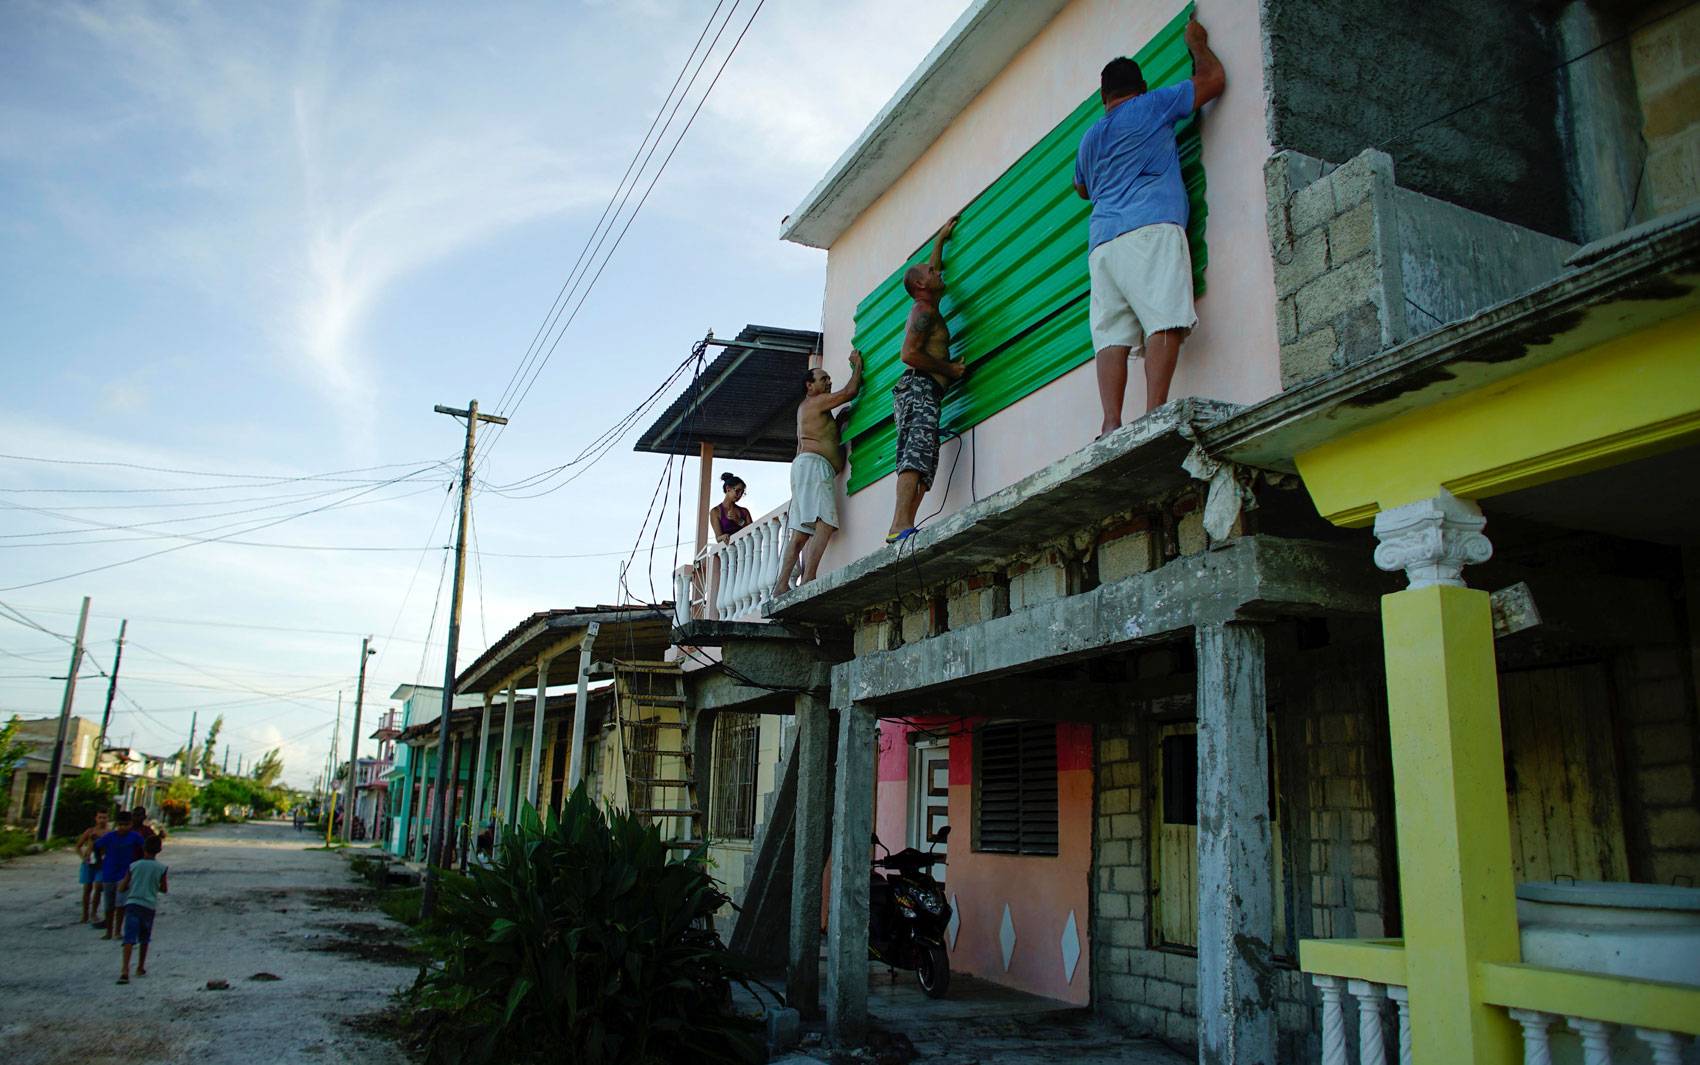  Moradores cobrem janela e reforçam proteção na cidade cubana de Caibarien